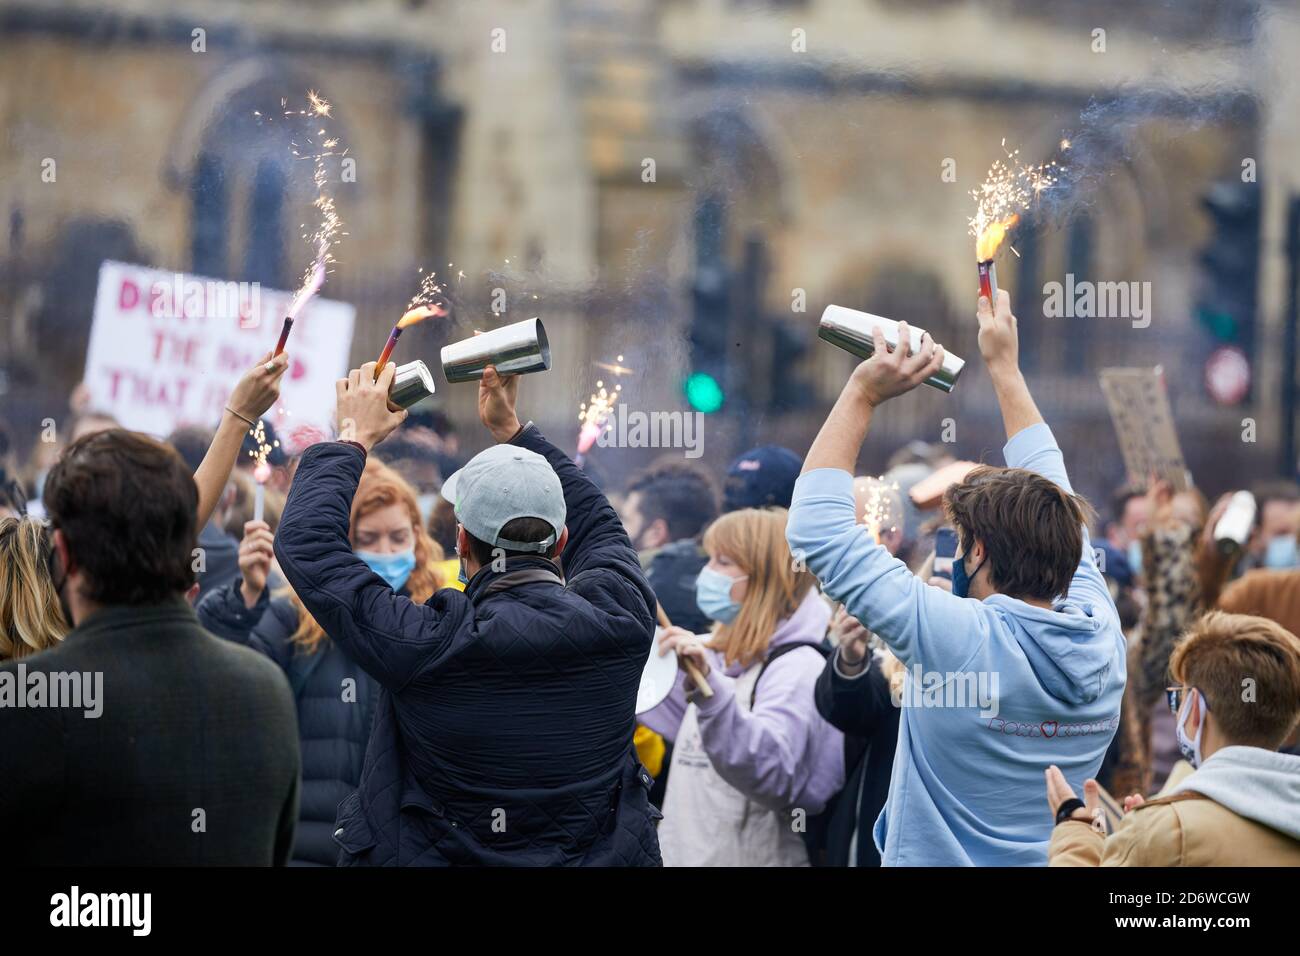 London, Großbritannien. - 19. Oktober 2020: Hospitality-Arbeiter protestieren auf dem Parliament Square gegen die Beschränkungen des britischen Coronavirus, die ihrer Meinung nach ihre Industrie zerstören werden. Stockfoto